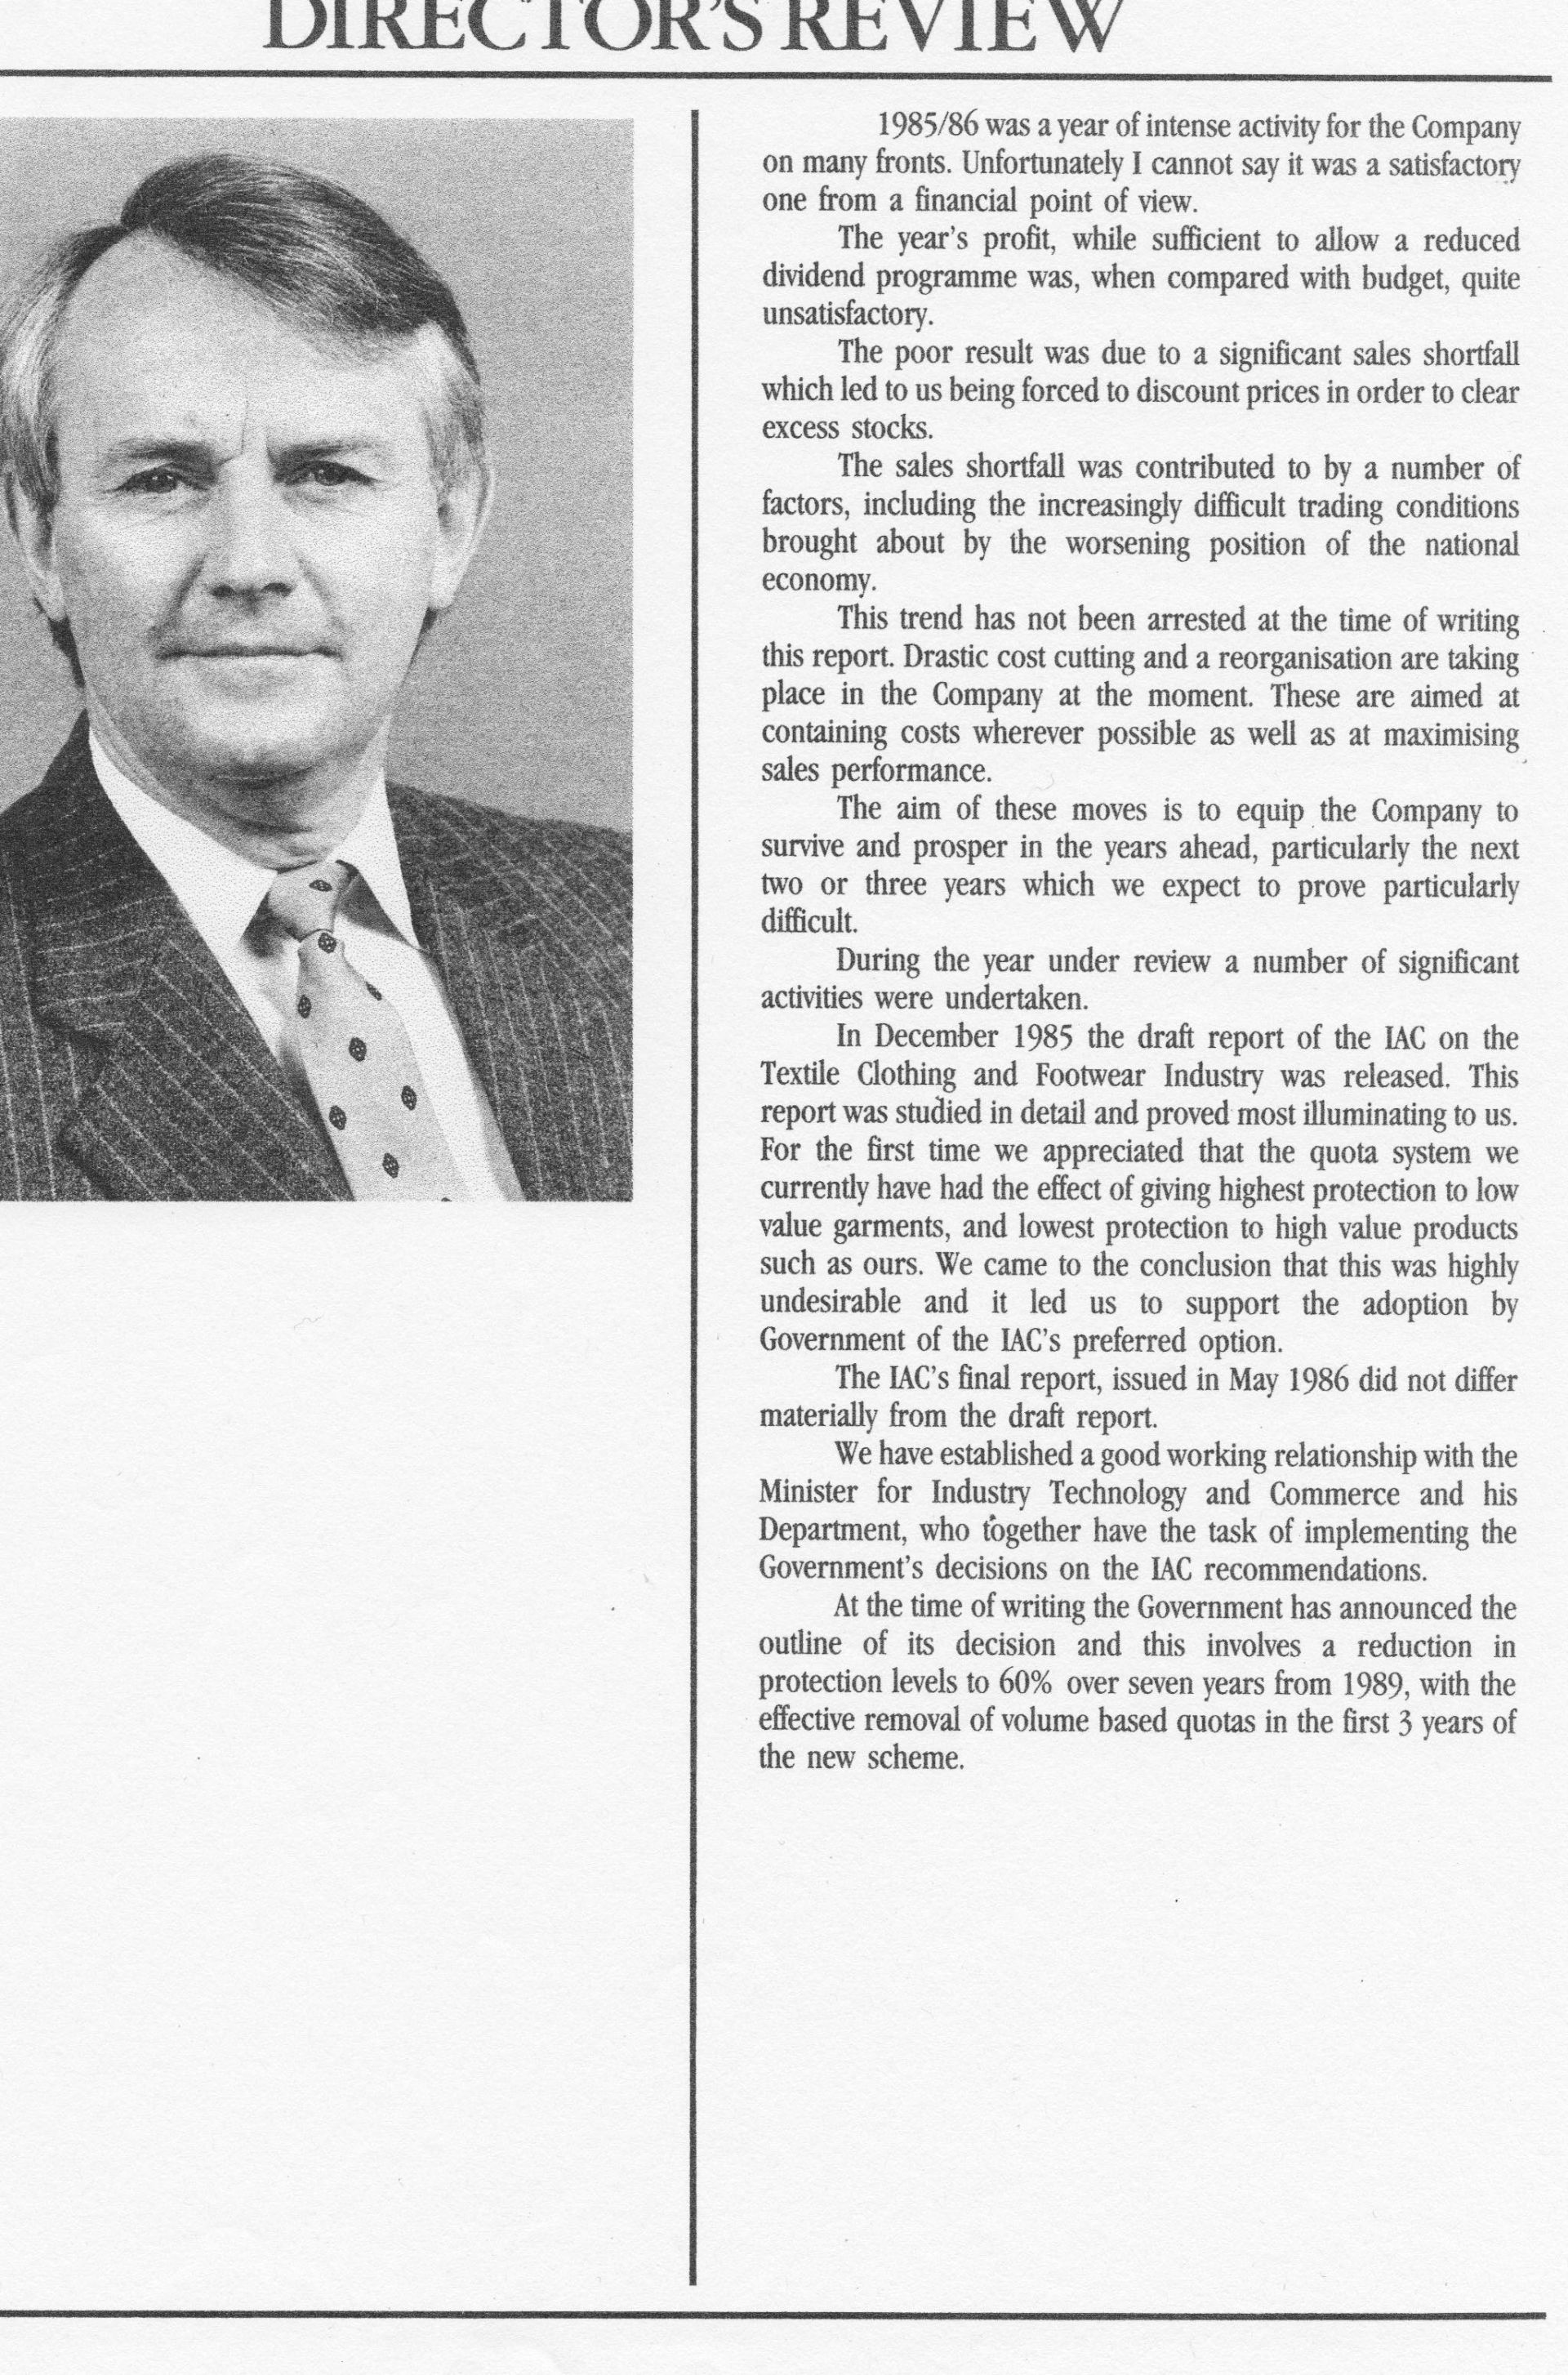 David Jones Managing Directors Review 1985/86.  